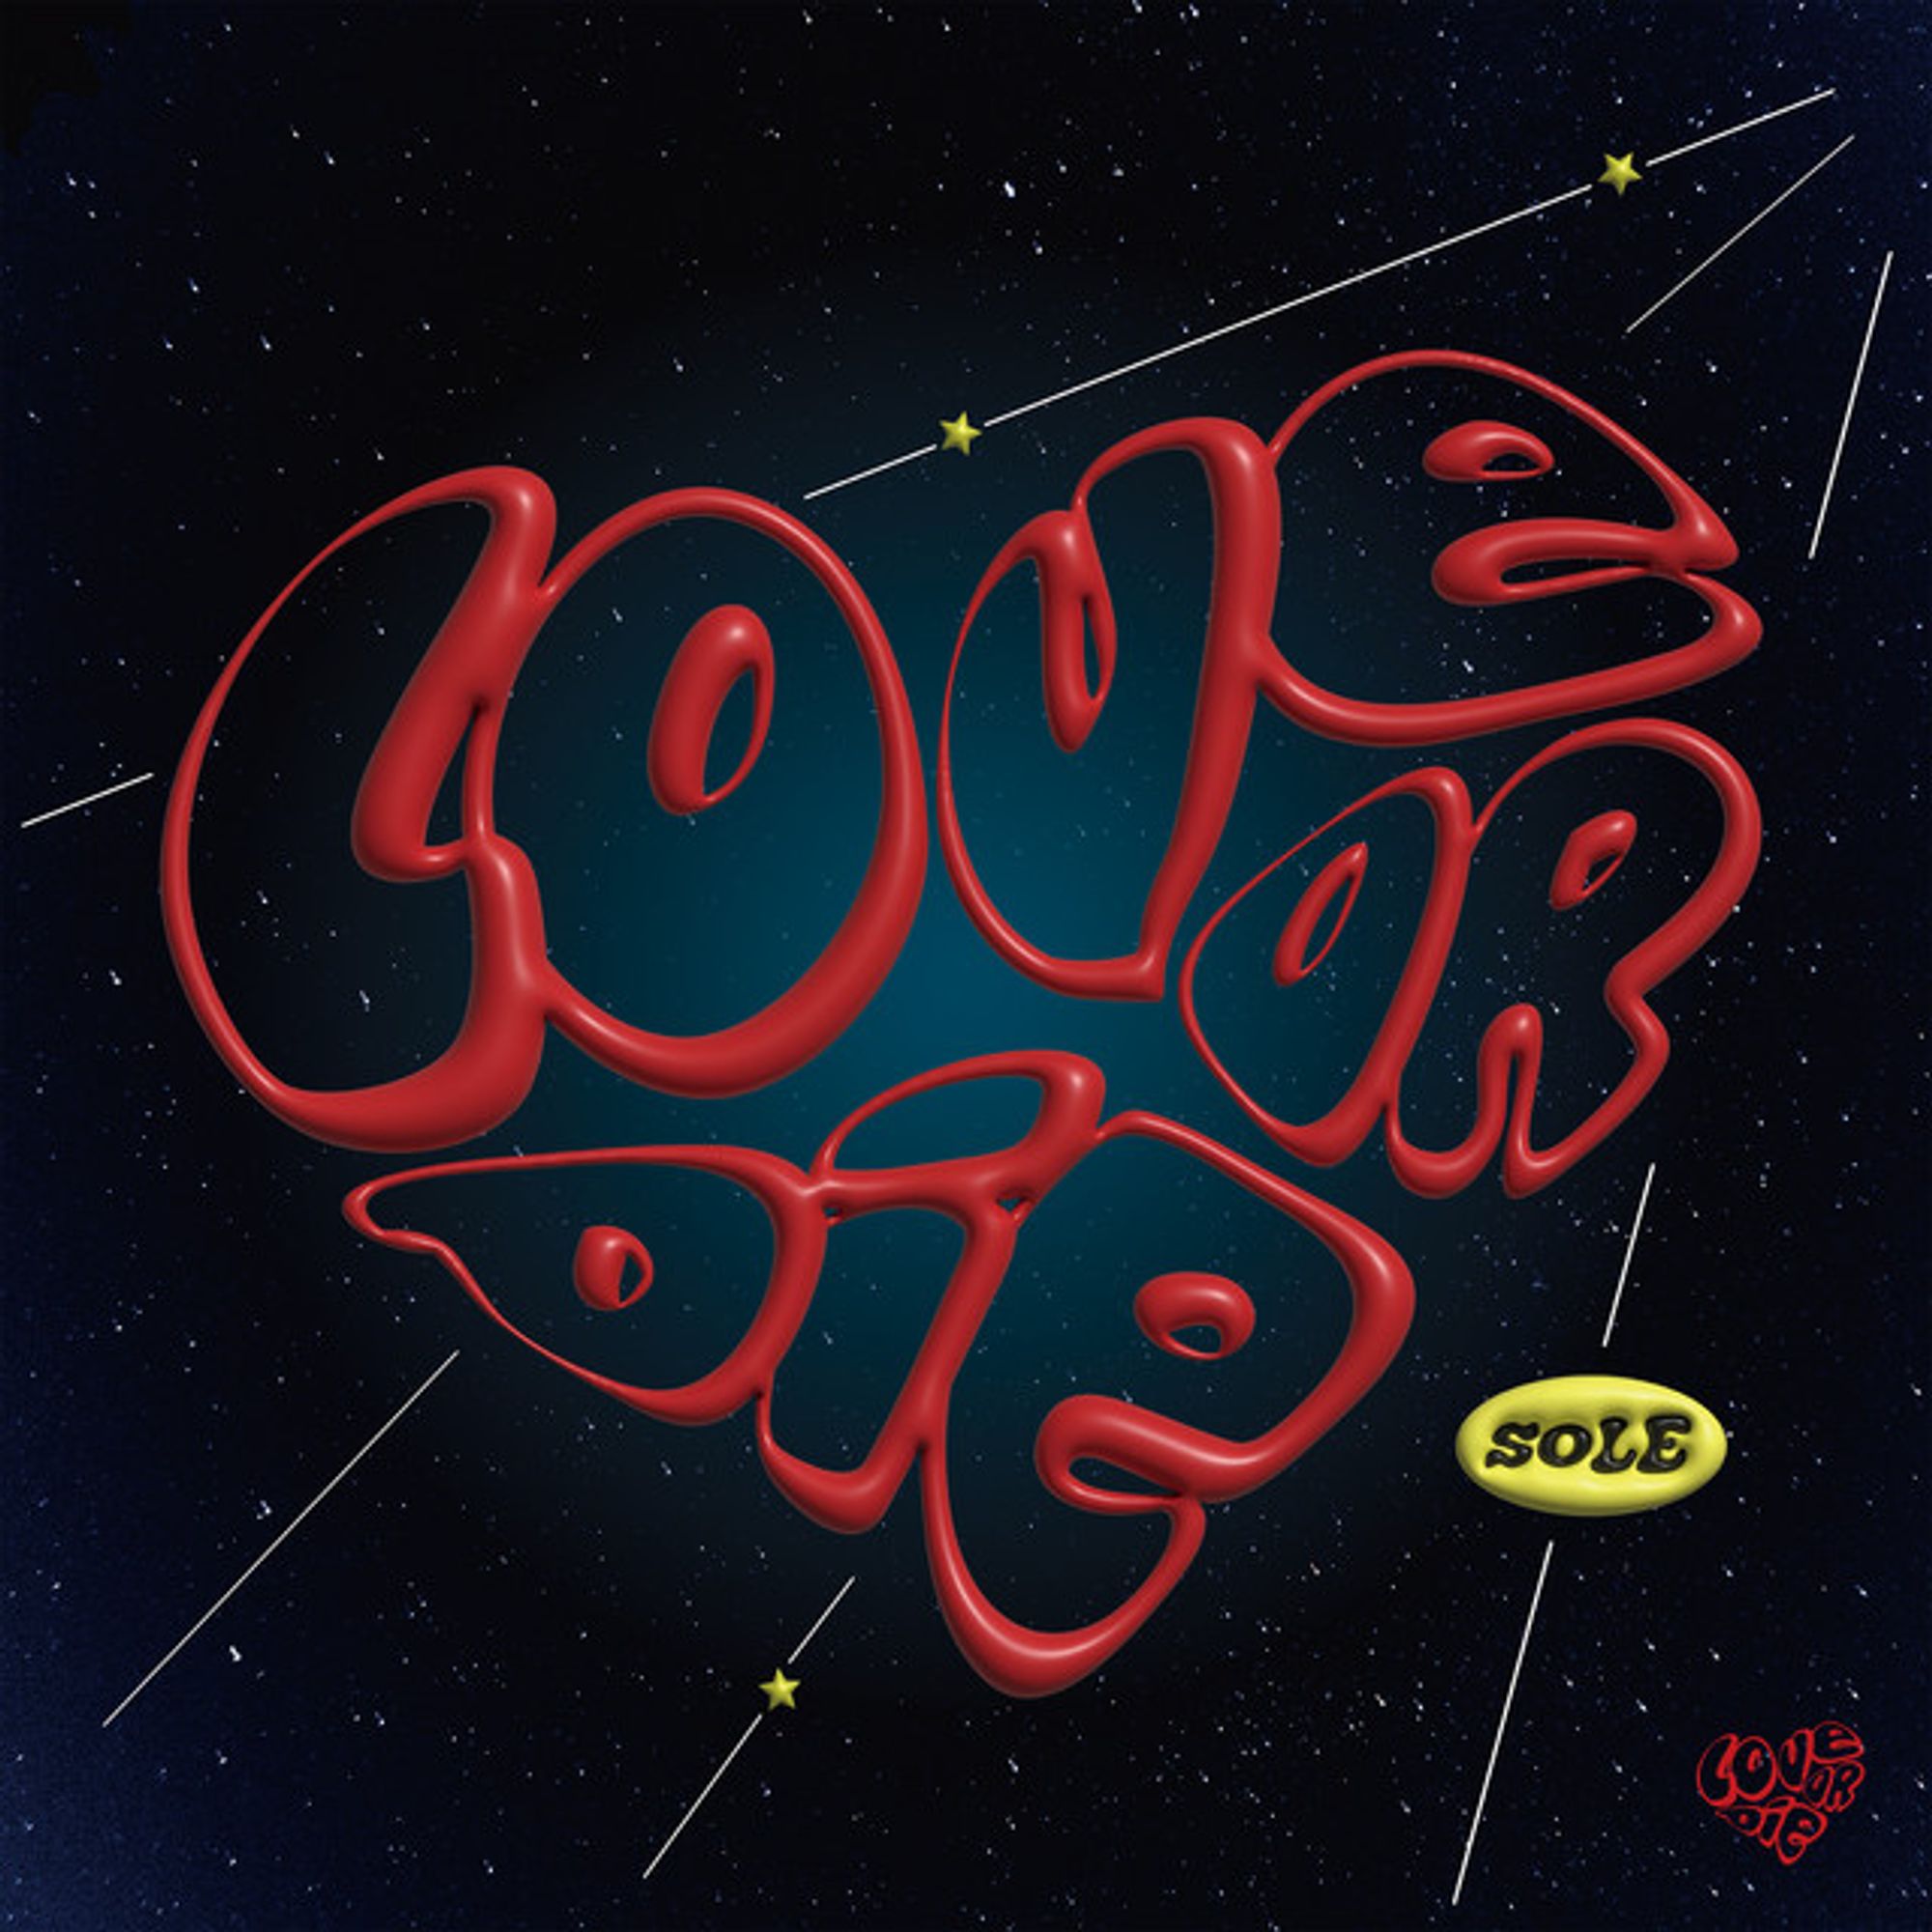 Love or Die - SOLE Version